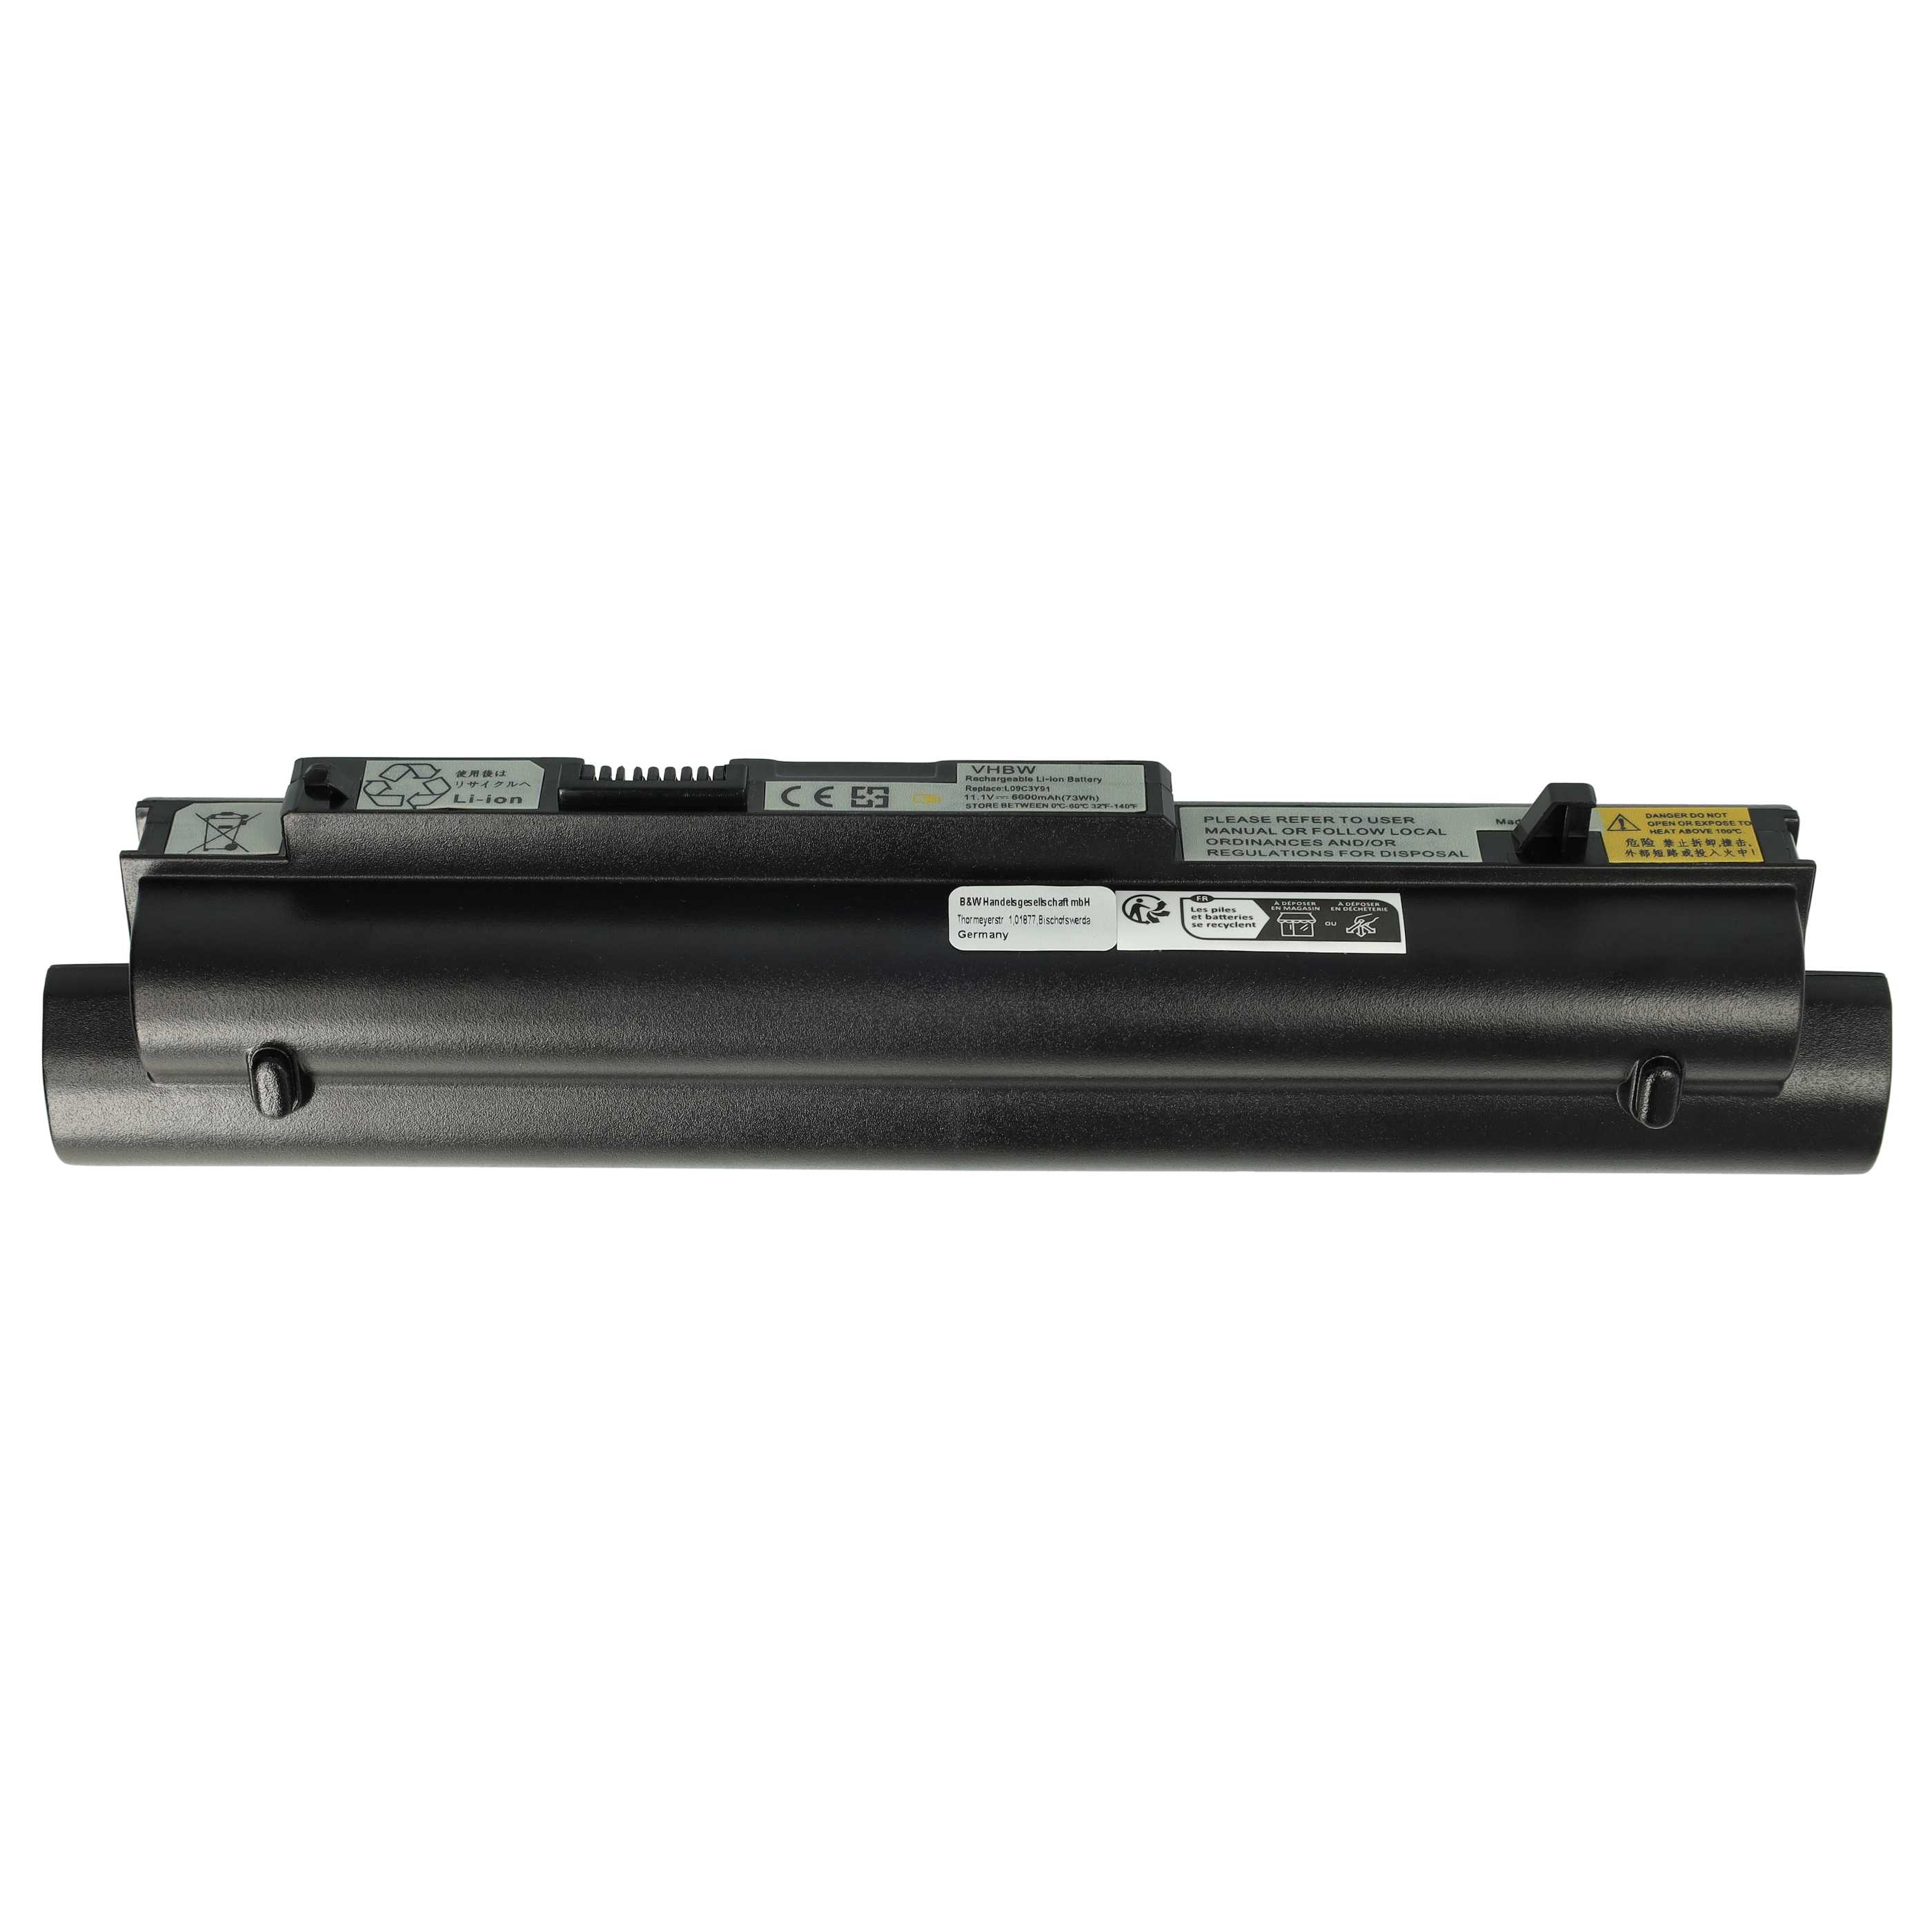 Notebook Battery Replacement for Lenovo 55Y9382, 55Y9383, 57Y6275, 57Y6273 - 6600mAh 11.1V Li-Ion, black